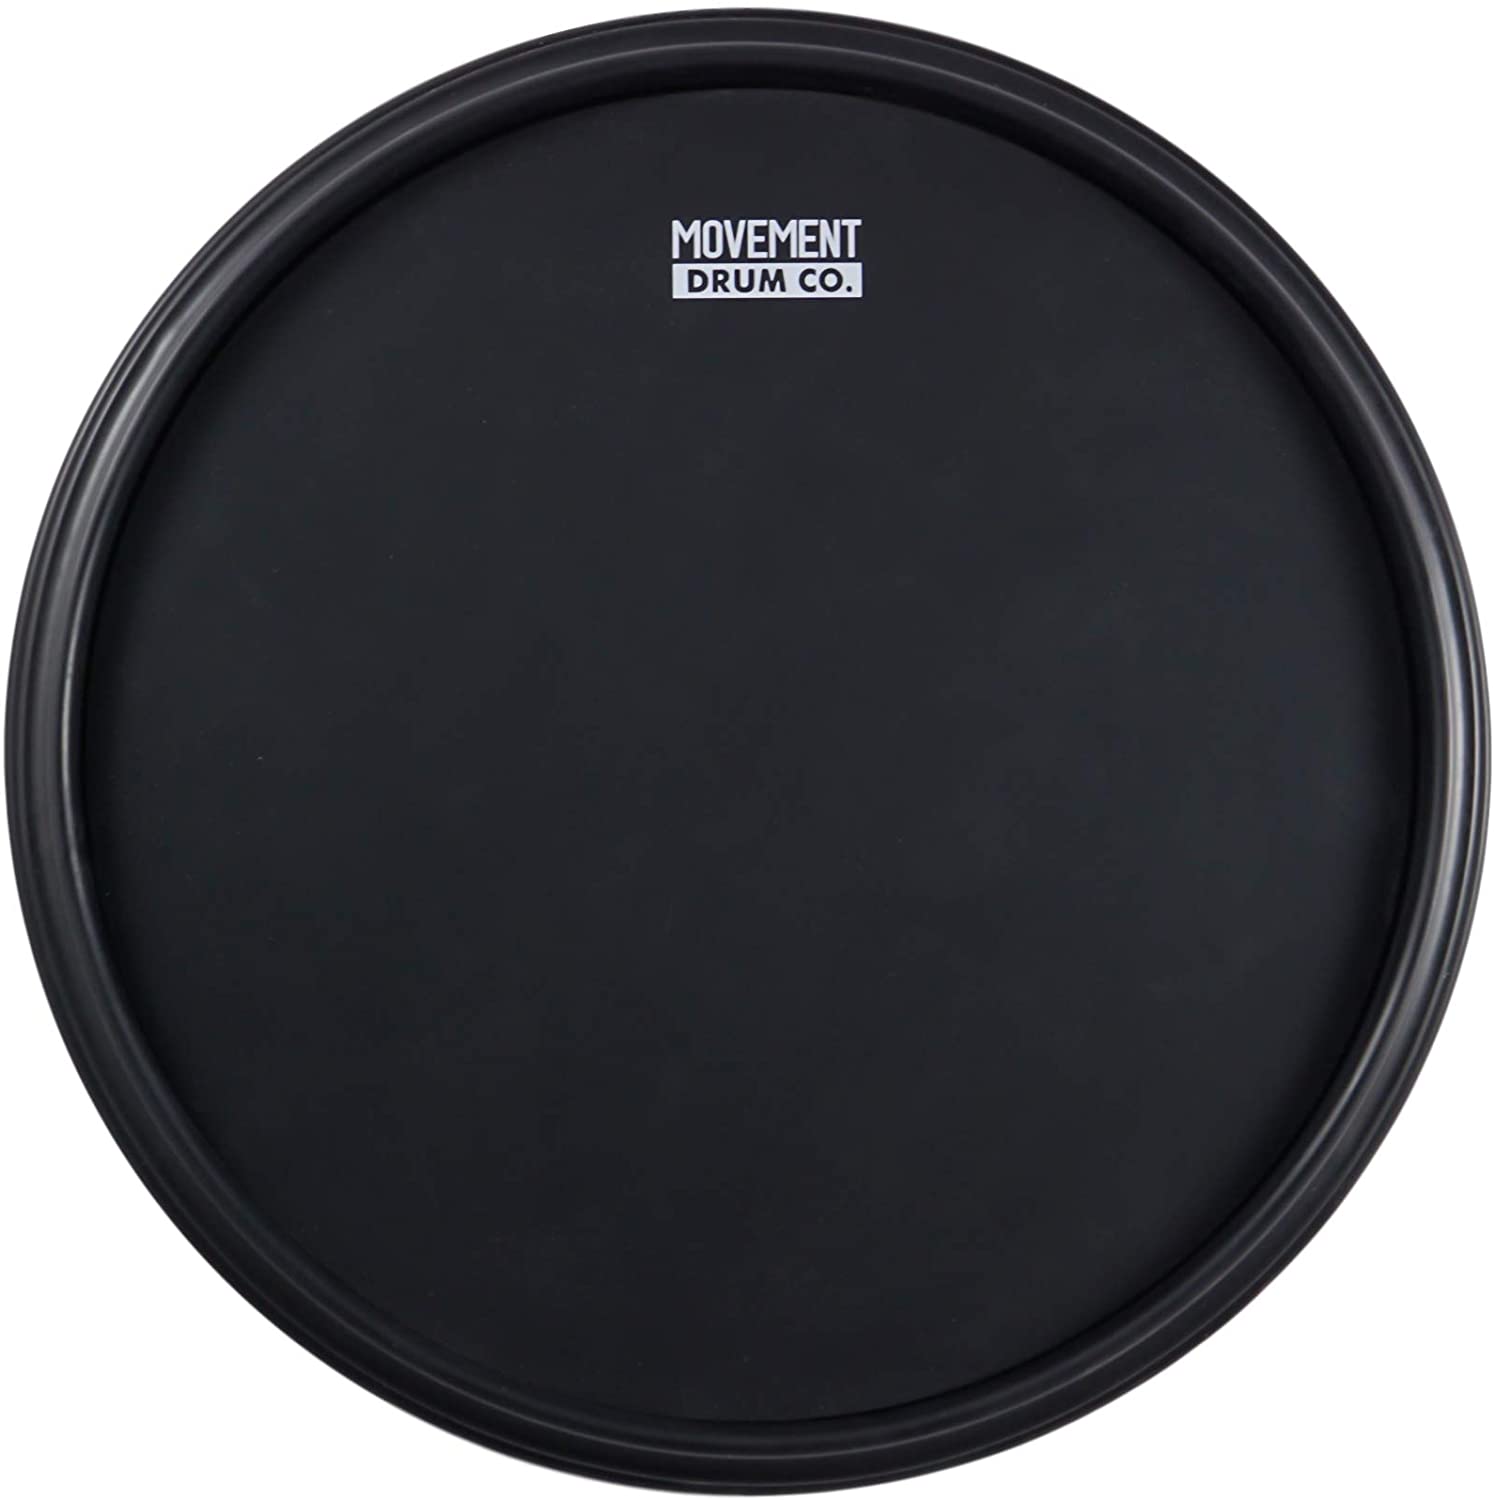 Movement - best drum practice pad